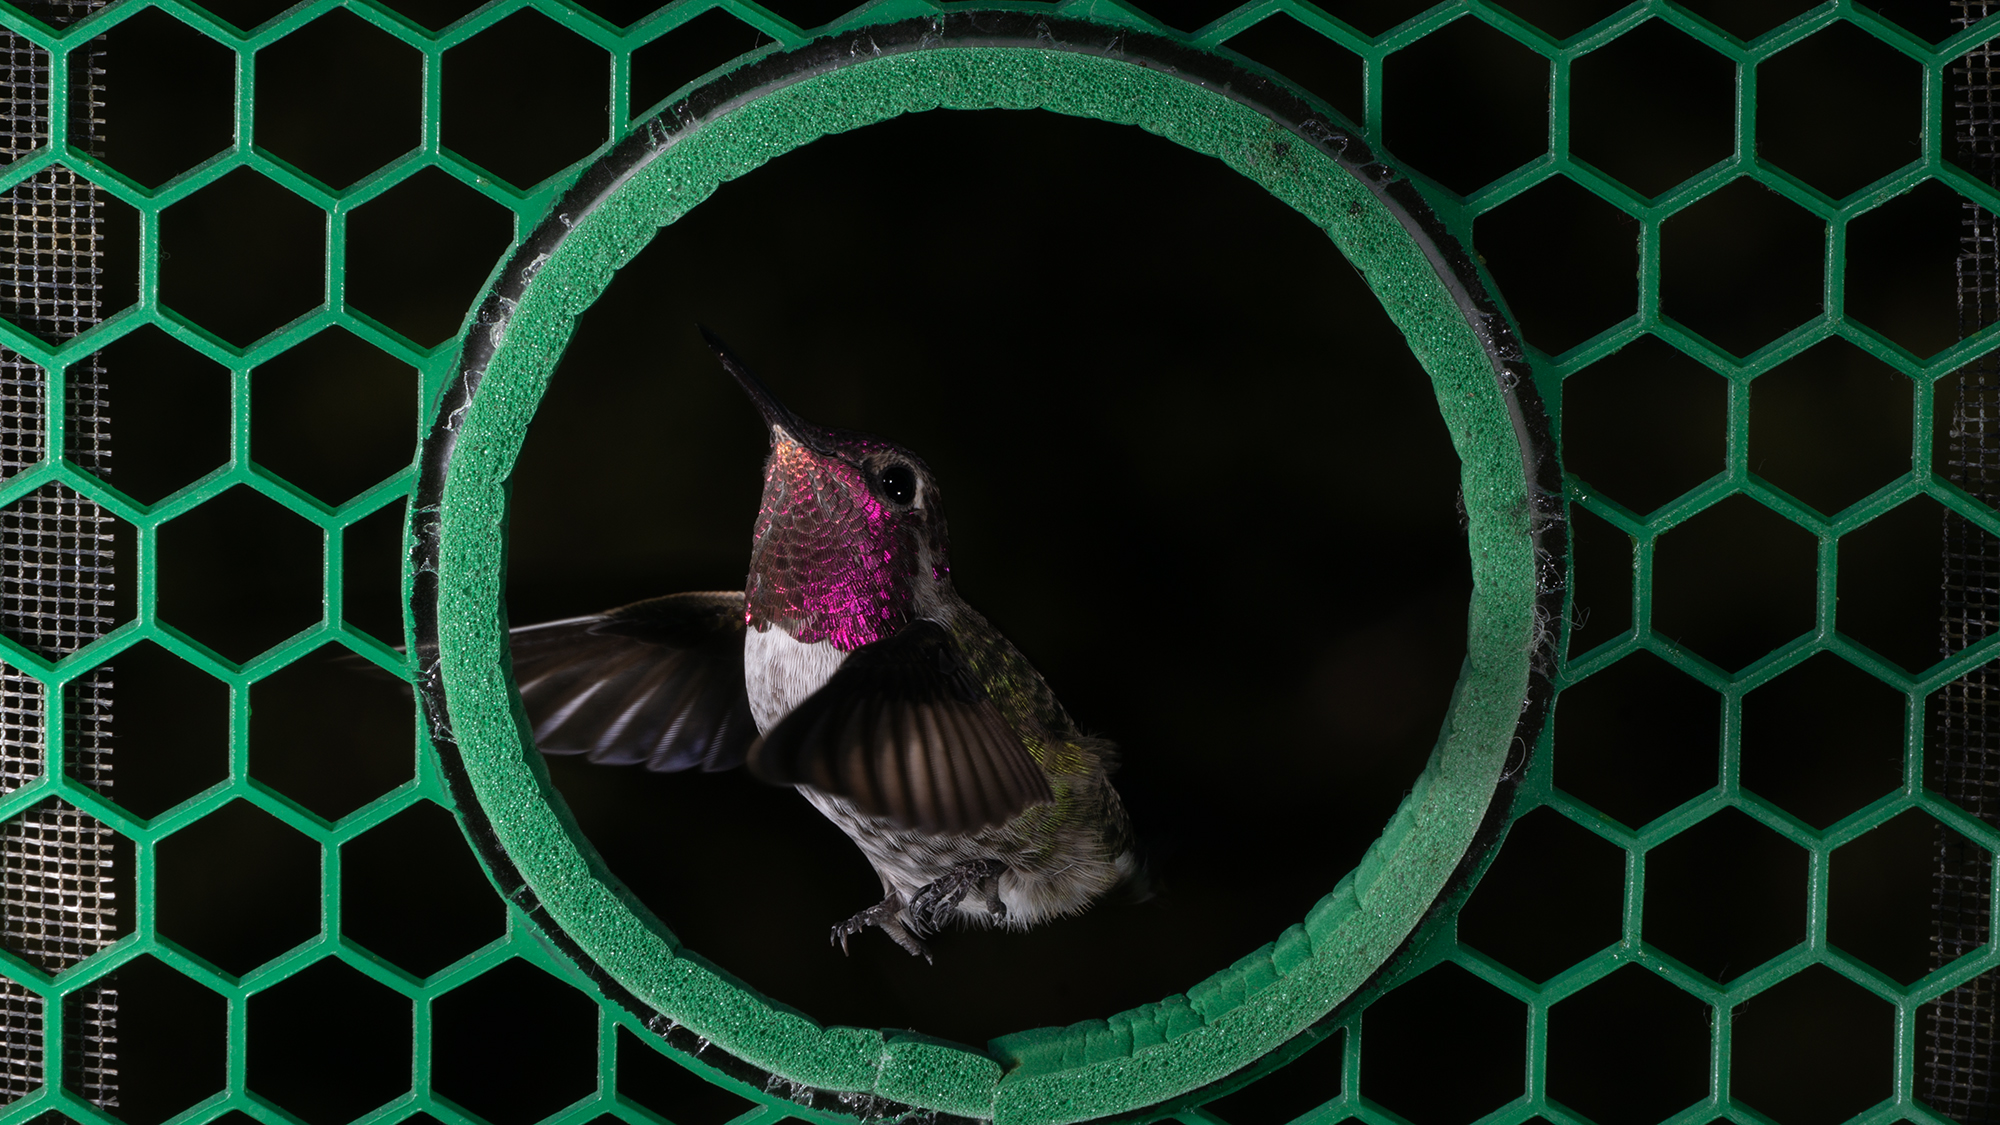 Hummingbird flies through green aperture